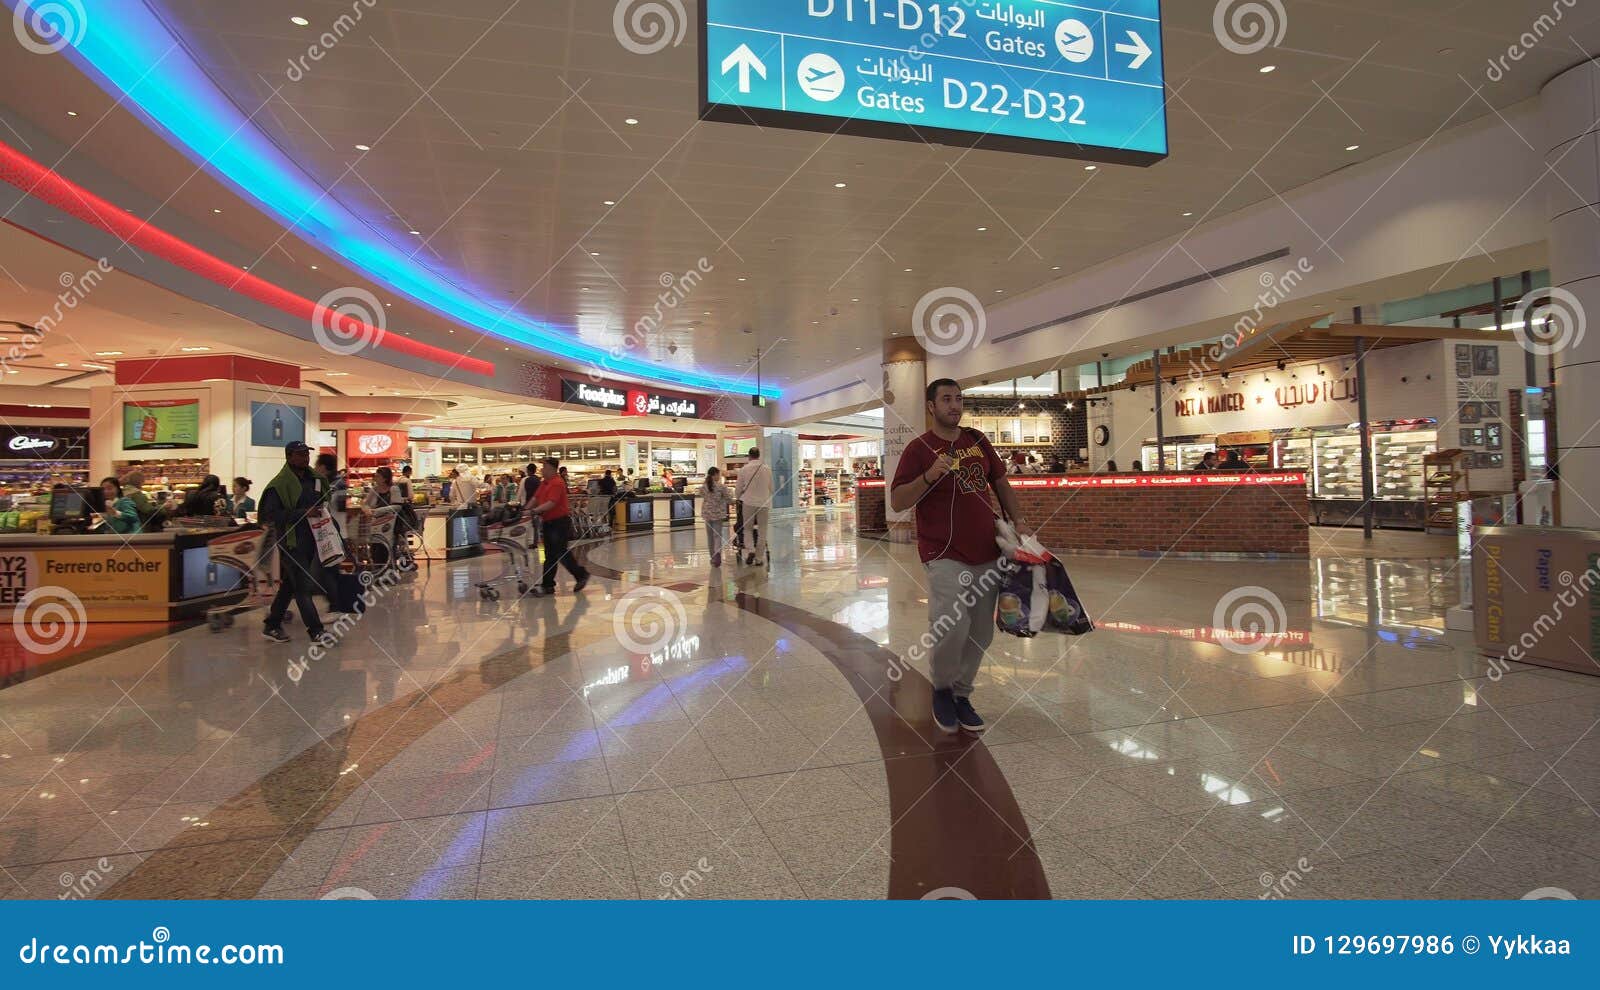 Dubai International lotnisko jest początkowym lotniskiem międzynarodowym słuzyć Dubaj i jest światowym ` s, Zjednoczone Emiraty A. Dubaj, UAE - Kwiecień 09, 2018: Dubai International lotnisko jest początkowym lotniskiem międzynarodowym słuzyć Dubaj i jest światowym ` s ruchliwie lotniskiem międzynarodowym pasażerskim ruchem drogowym, Zjednoczone Emiraty Arabskie